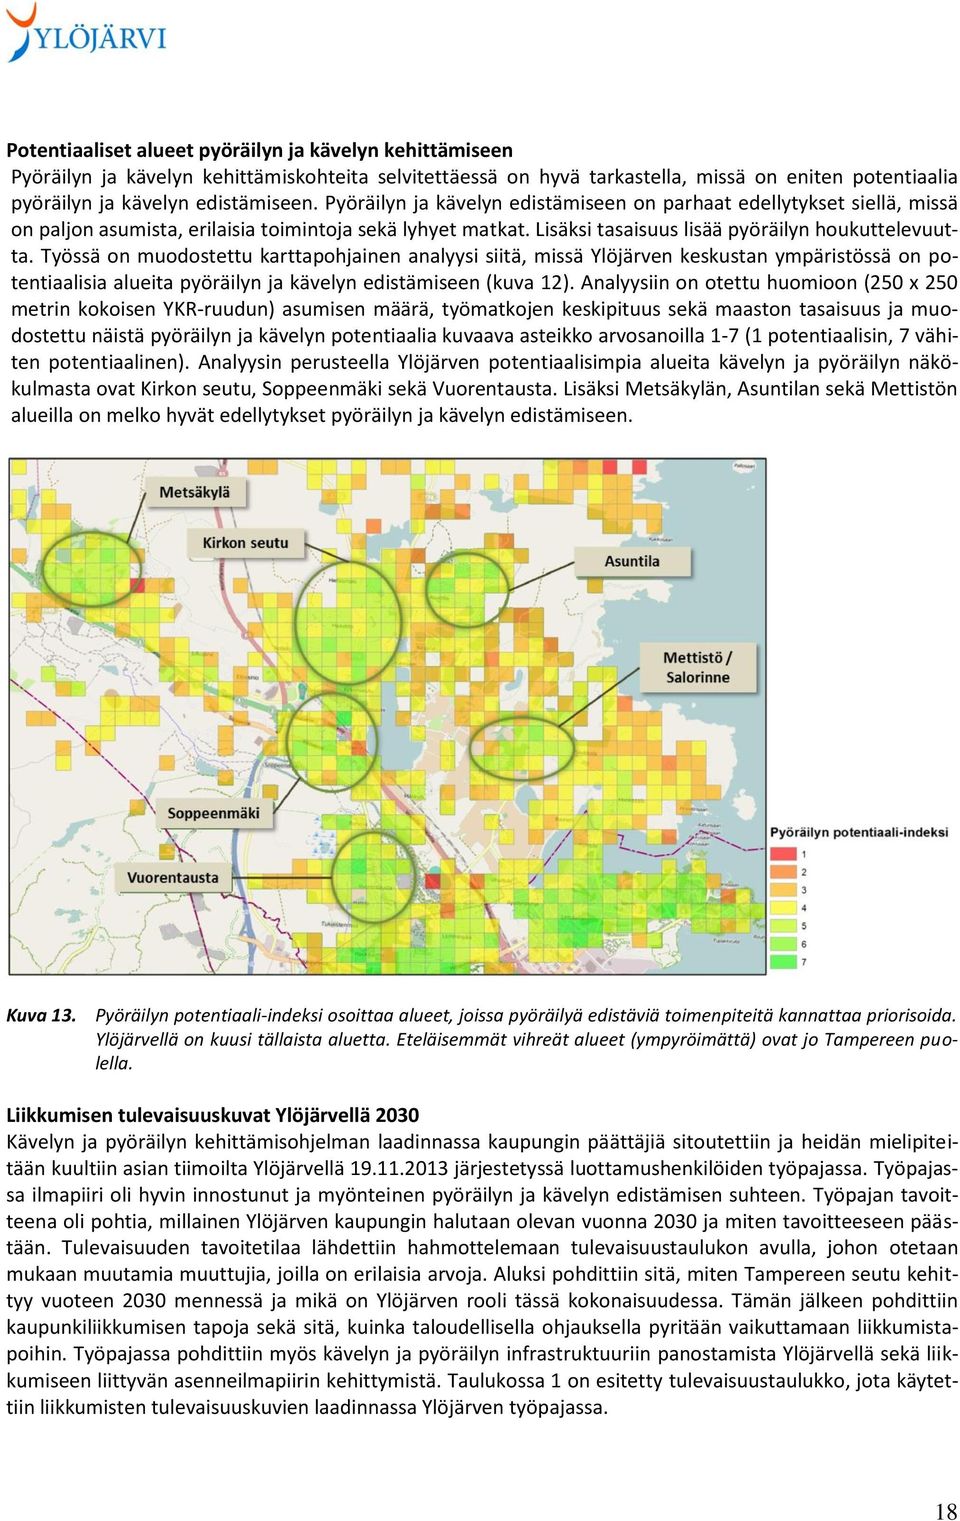 Työssä on muodostettu karttapohjainen analyysi siitä, missä Ylöjärven keskustan ympäristössä on potentiaalisia alueita pyöräilyn ja kävelyn edistämiseen (kuva 12).